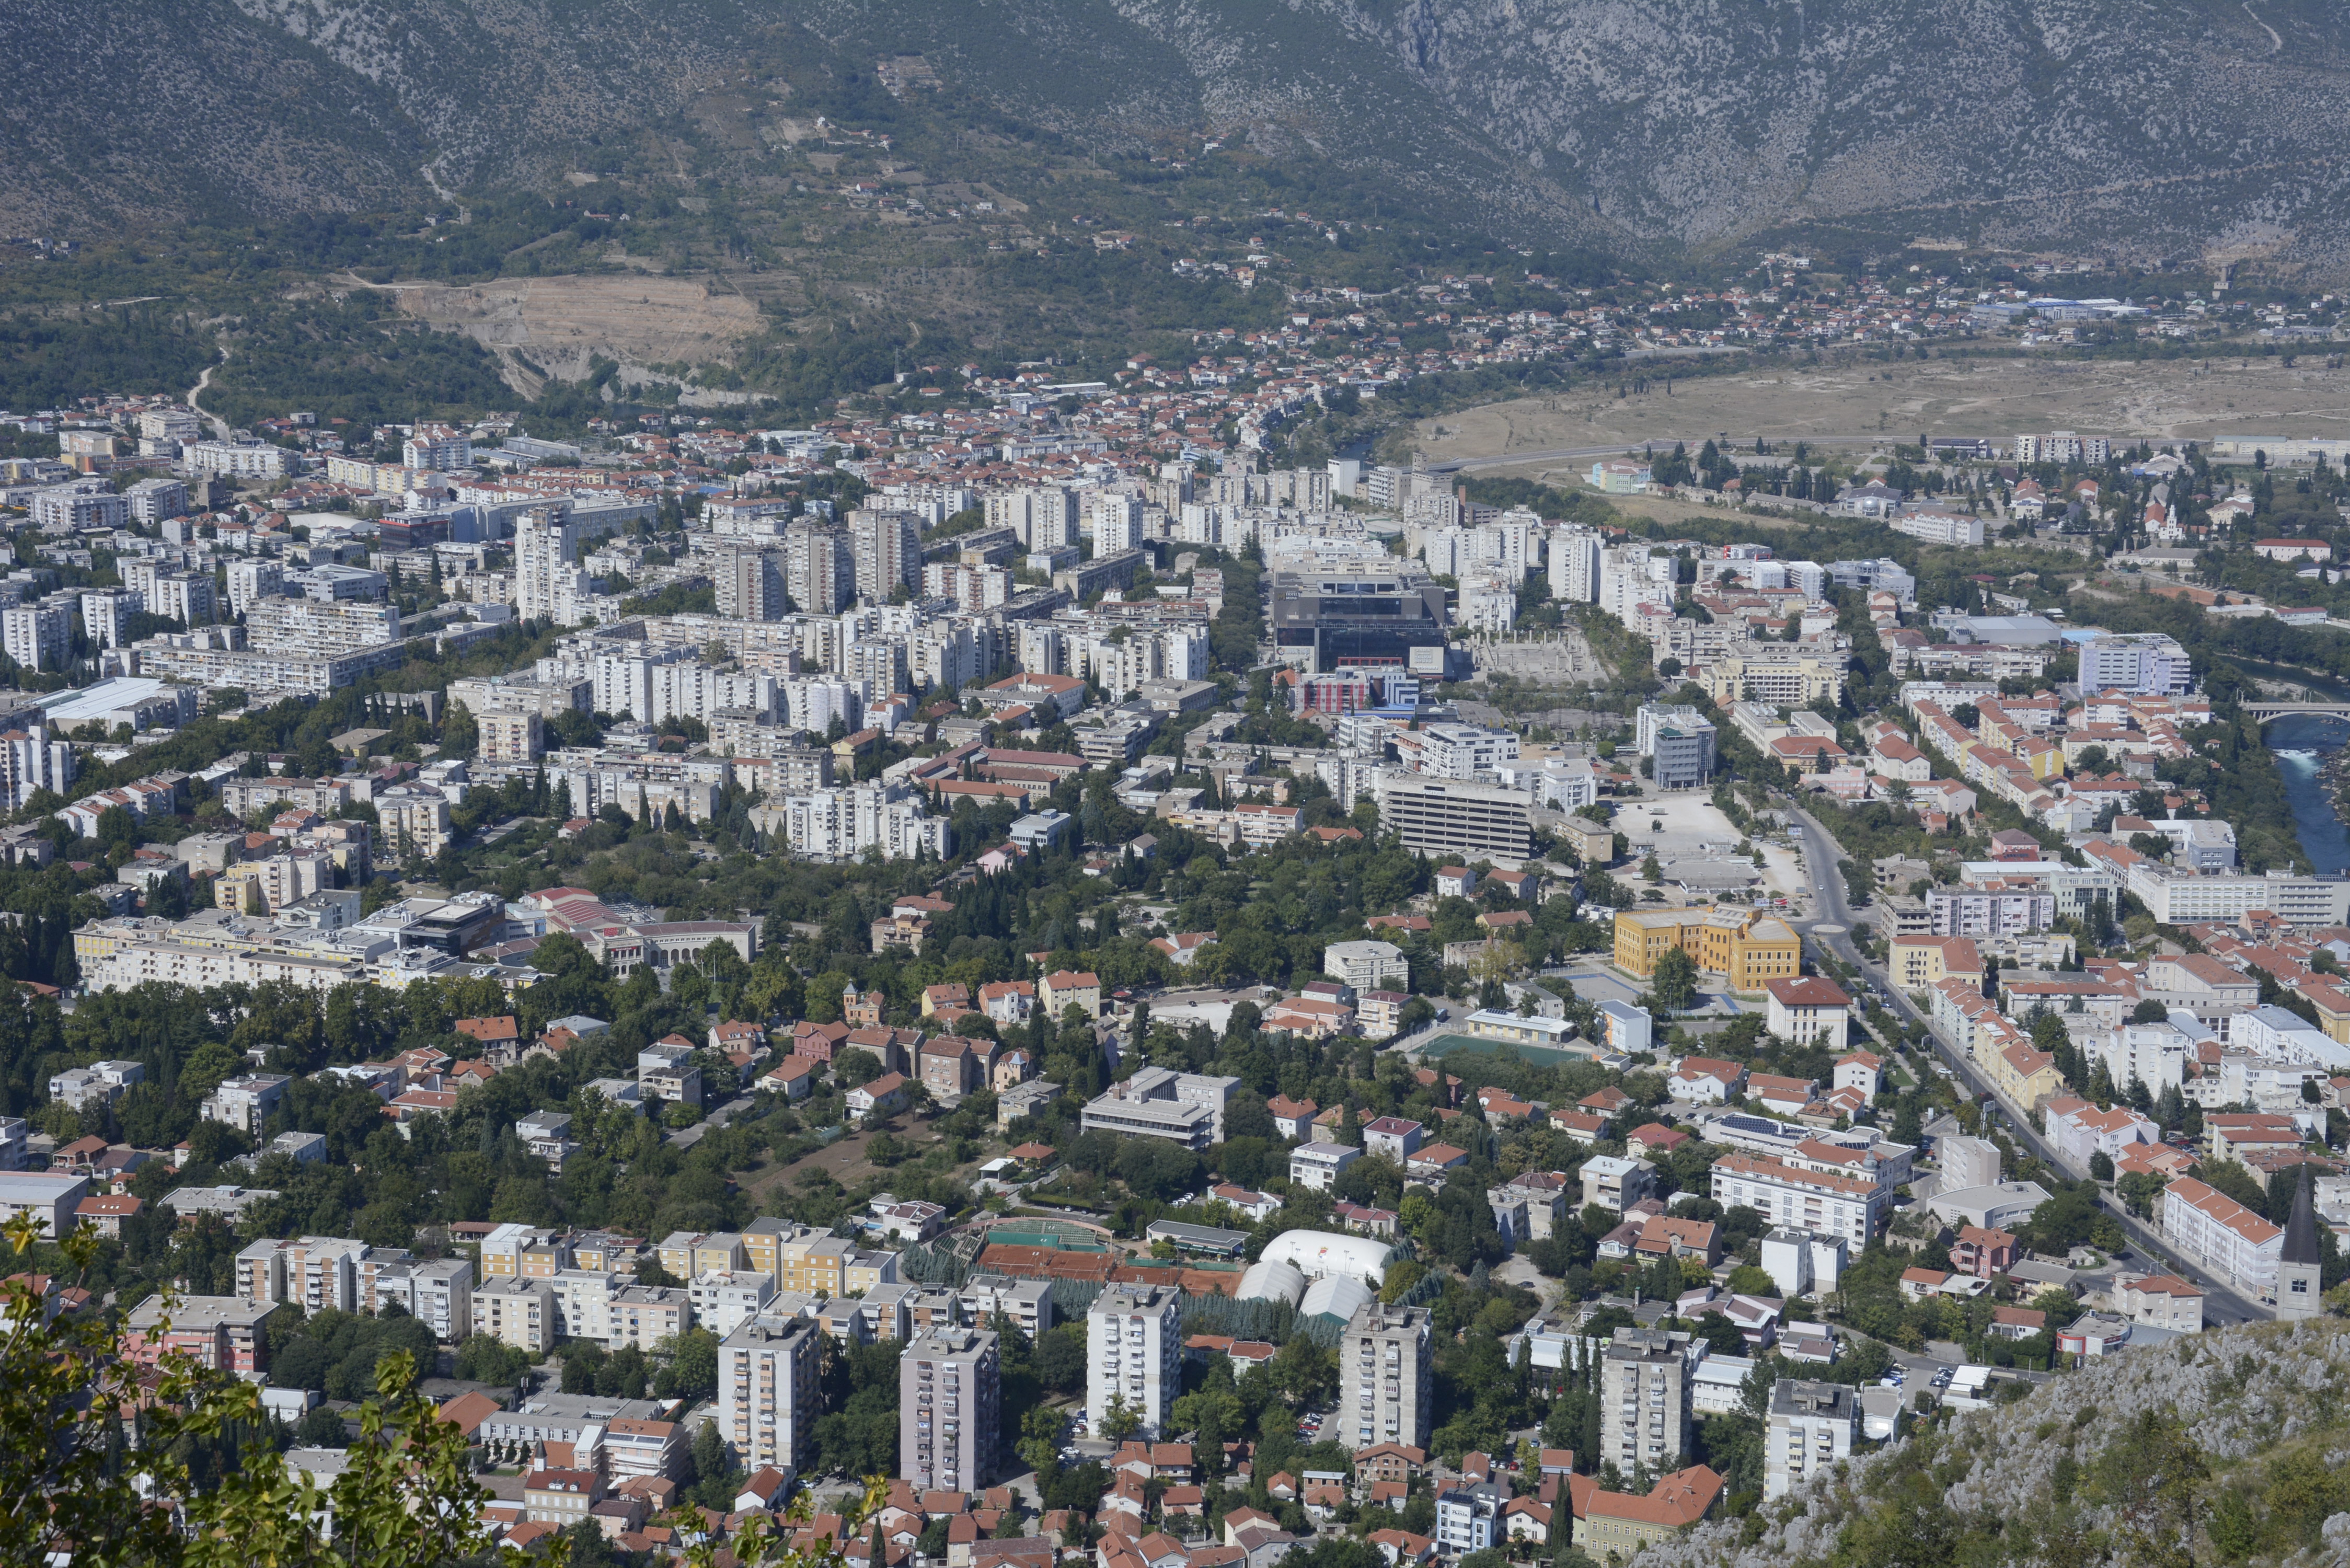 Hoće li mladi birači u Mostaru biti pokretačka snaga promjena?